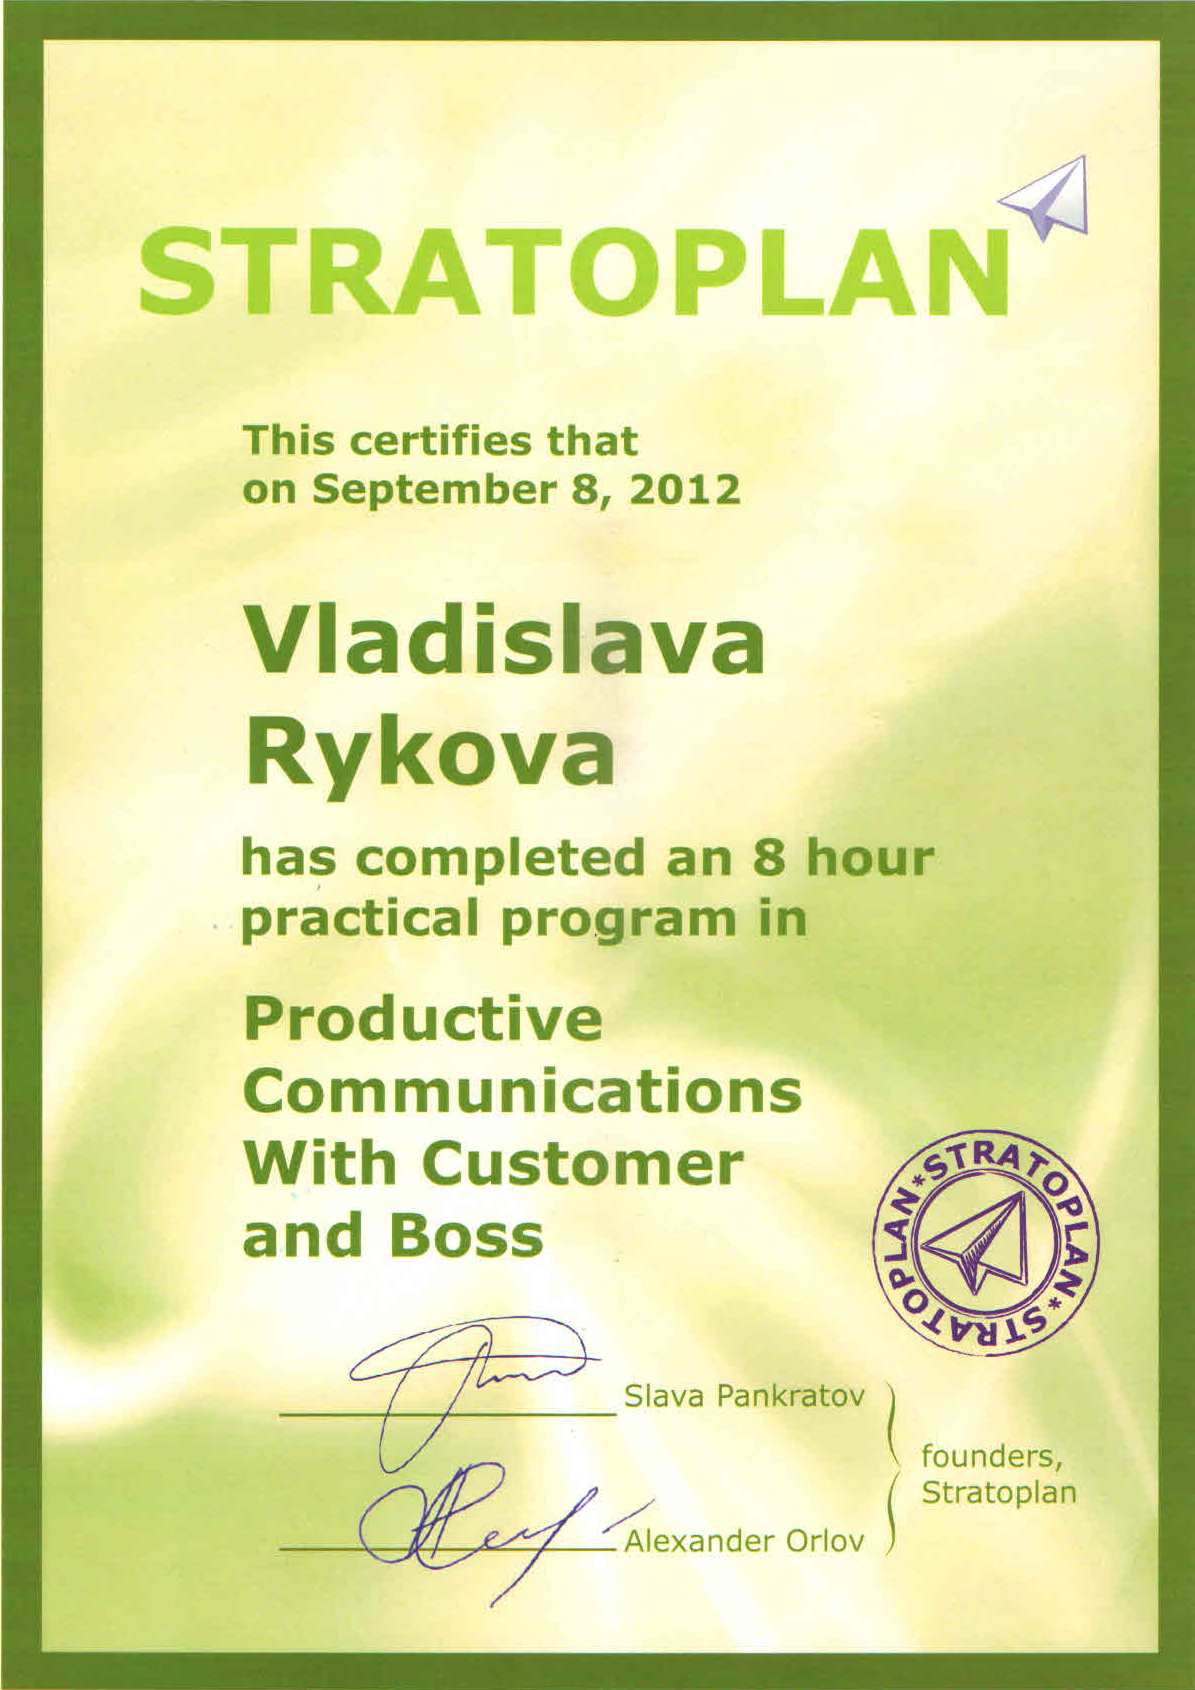 Сертификат о прохождении тренинга от Стратоплана